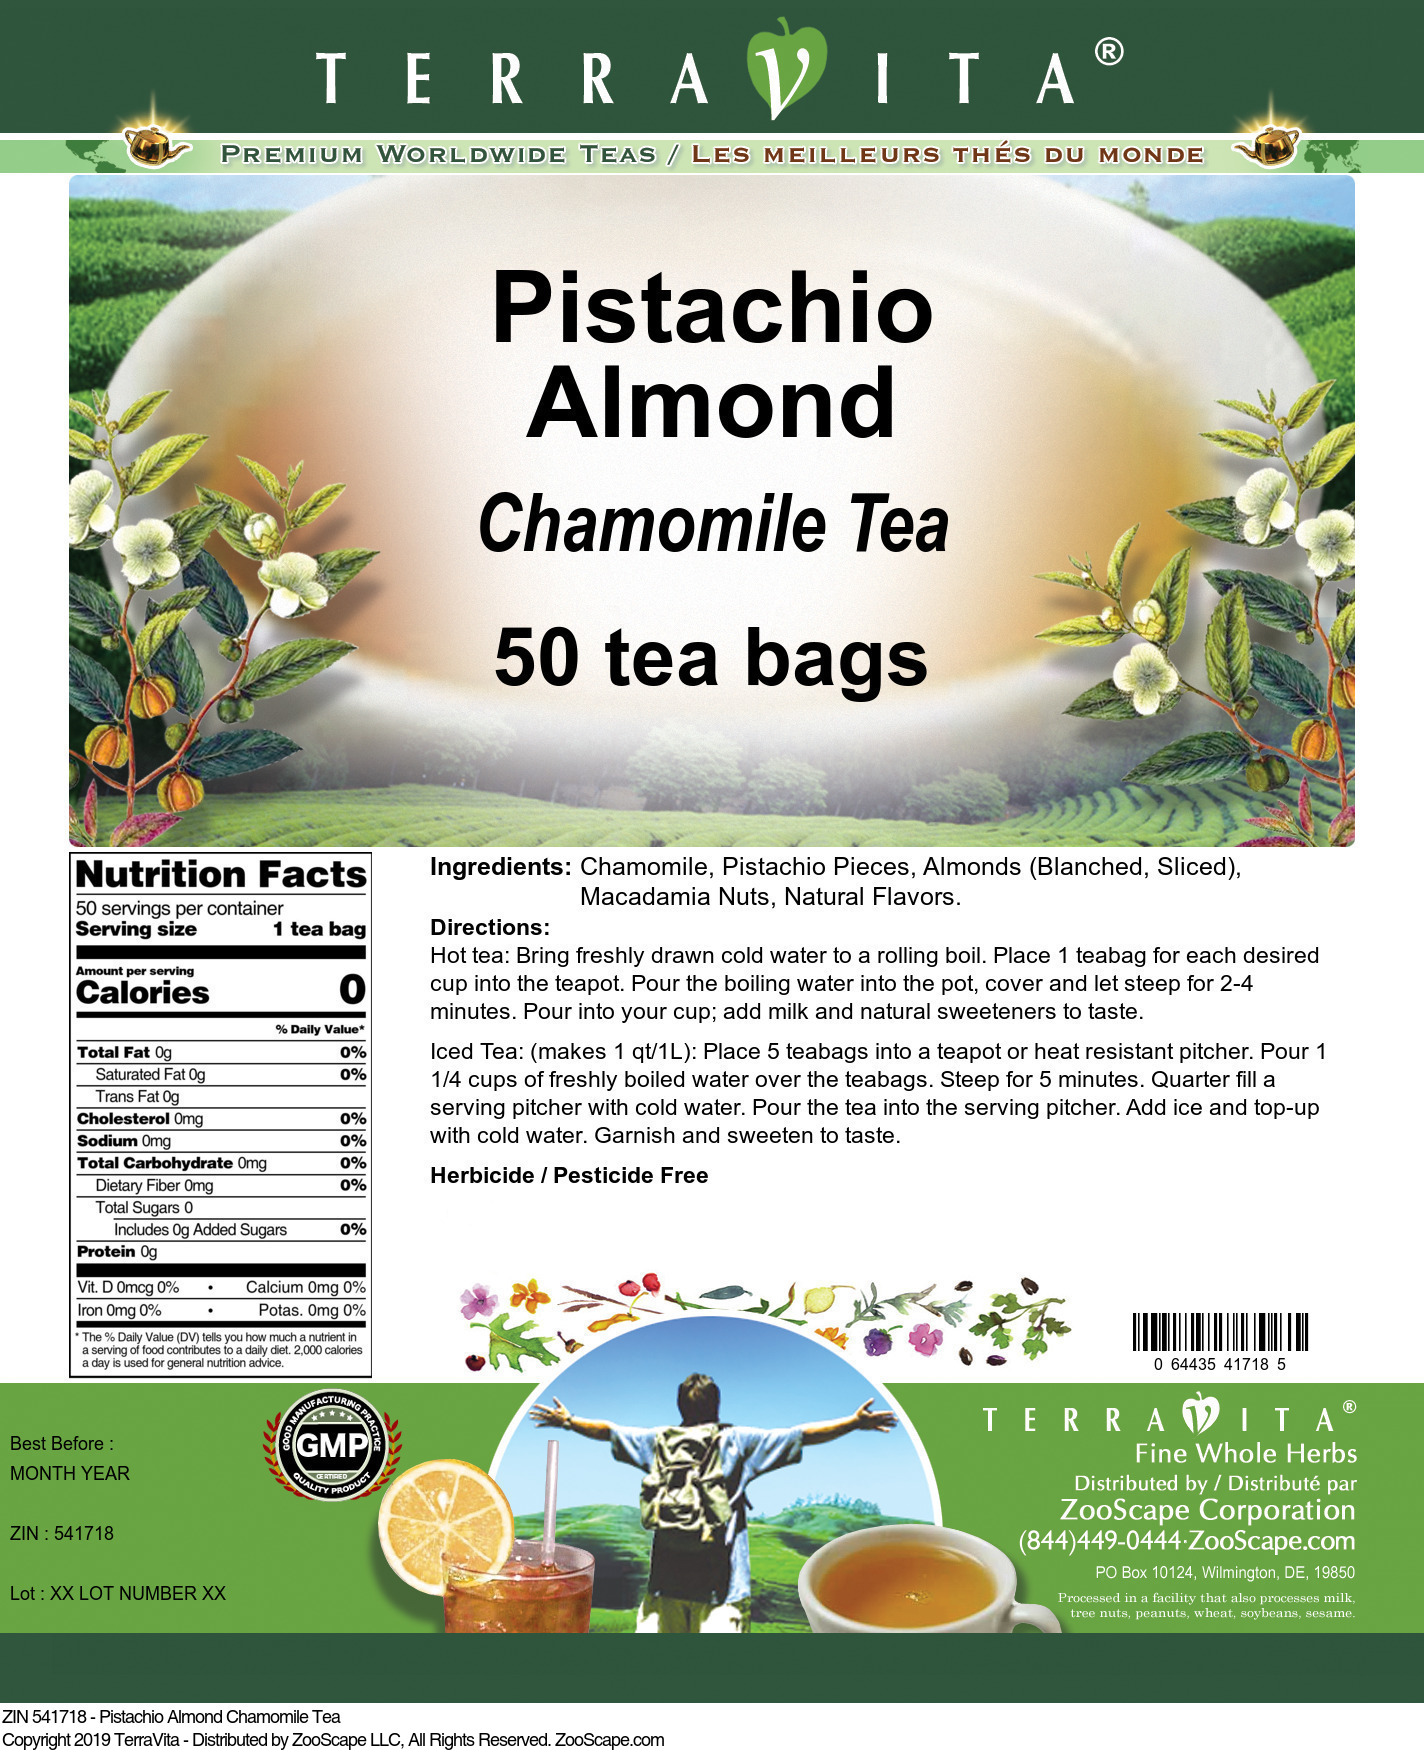 Pistachio Almond Chamomile Tea - Label